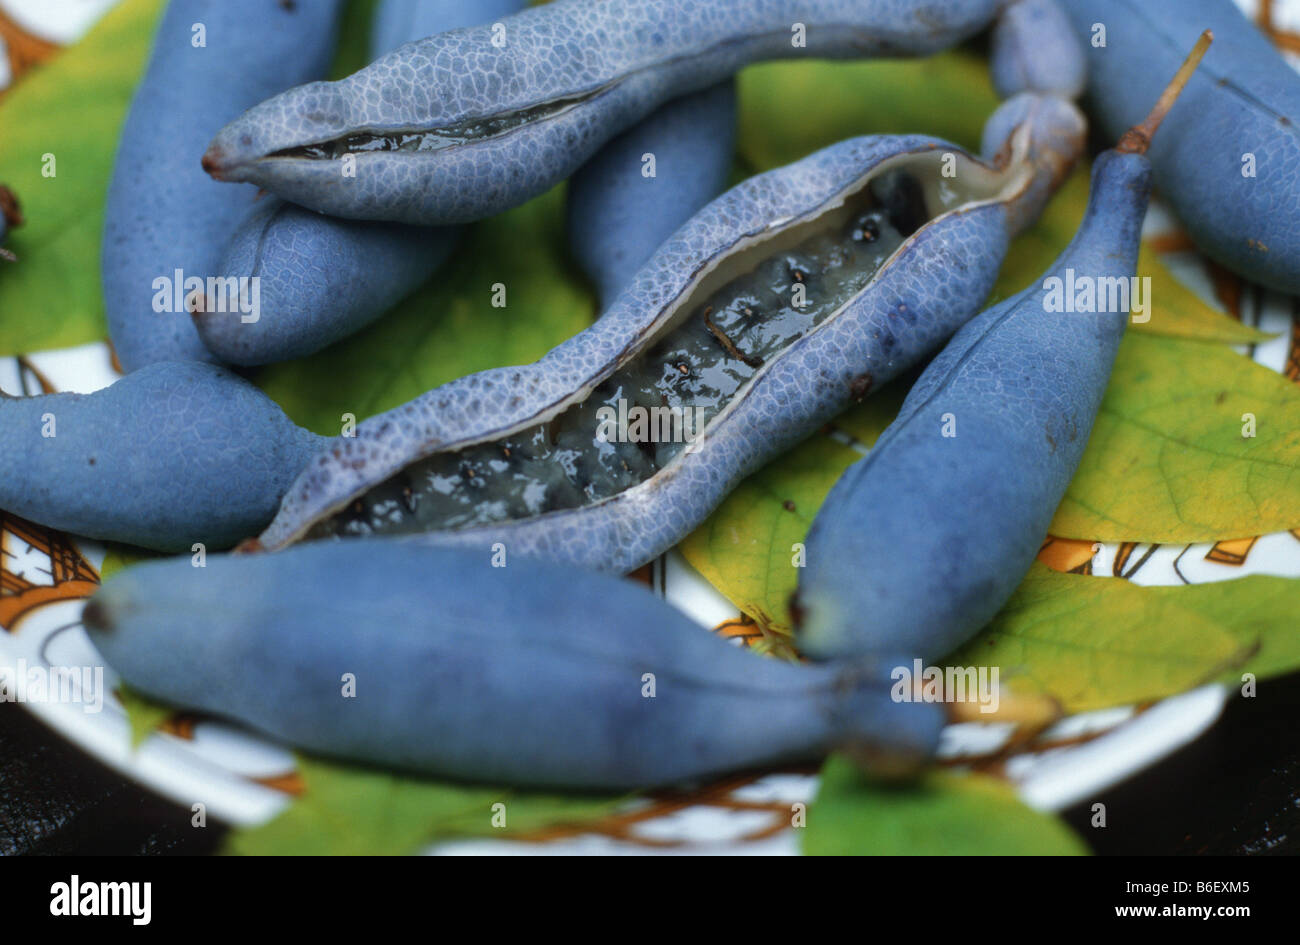 Dead Man's Fingers, Blue bean shrub, Blue bean tree (Decaisnea fargesii), blue fruits Stock Photo